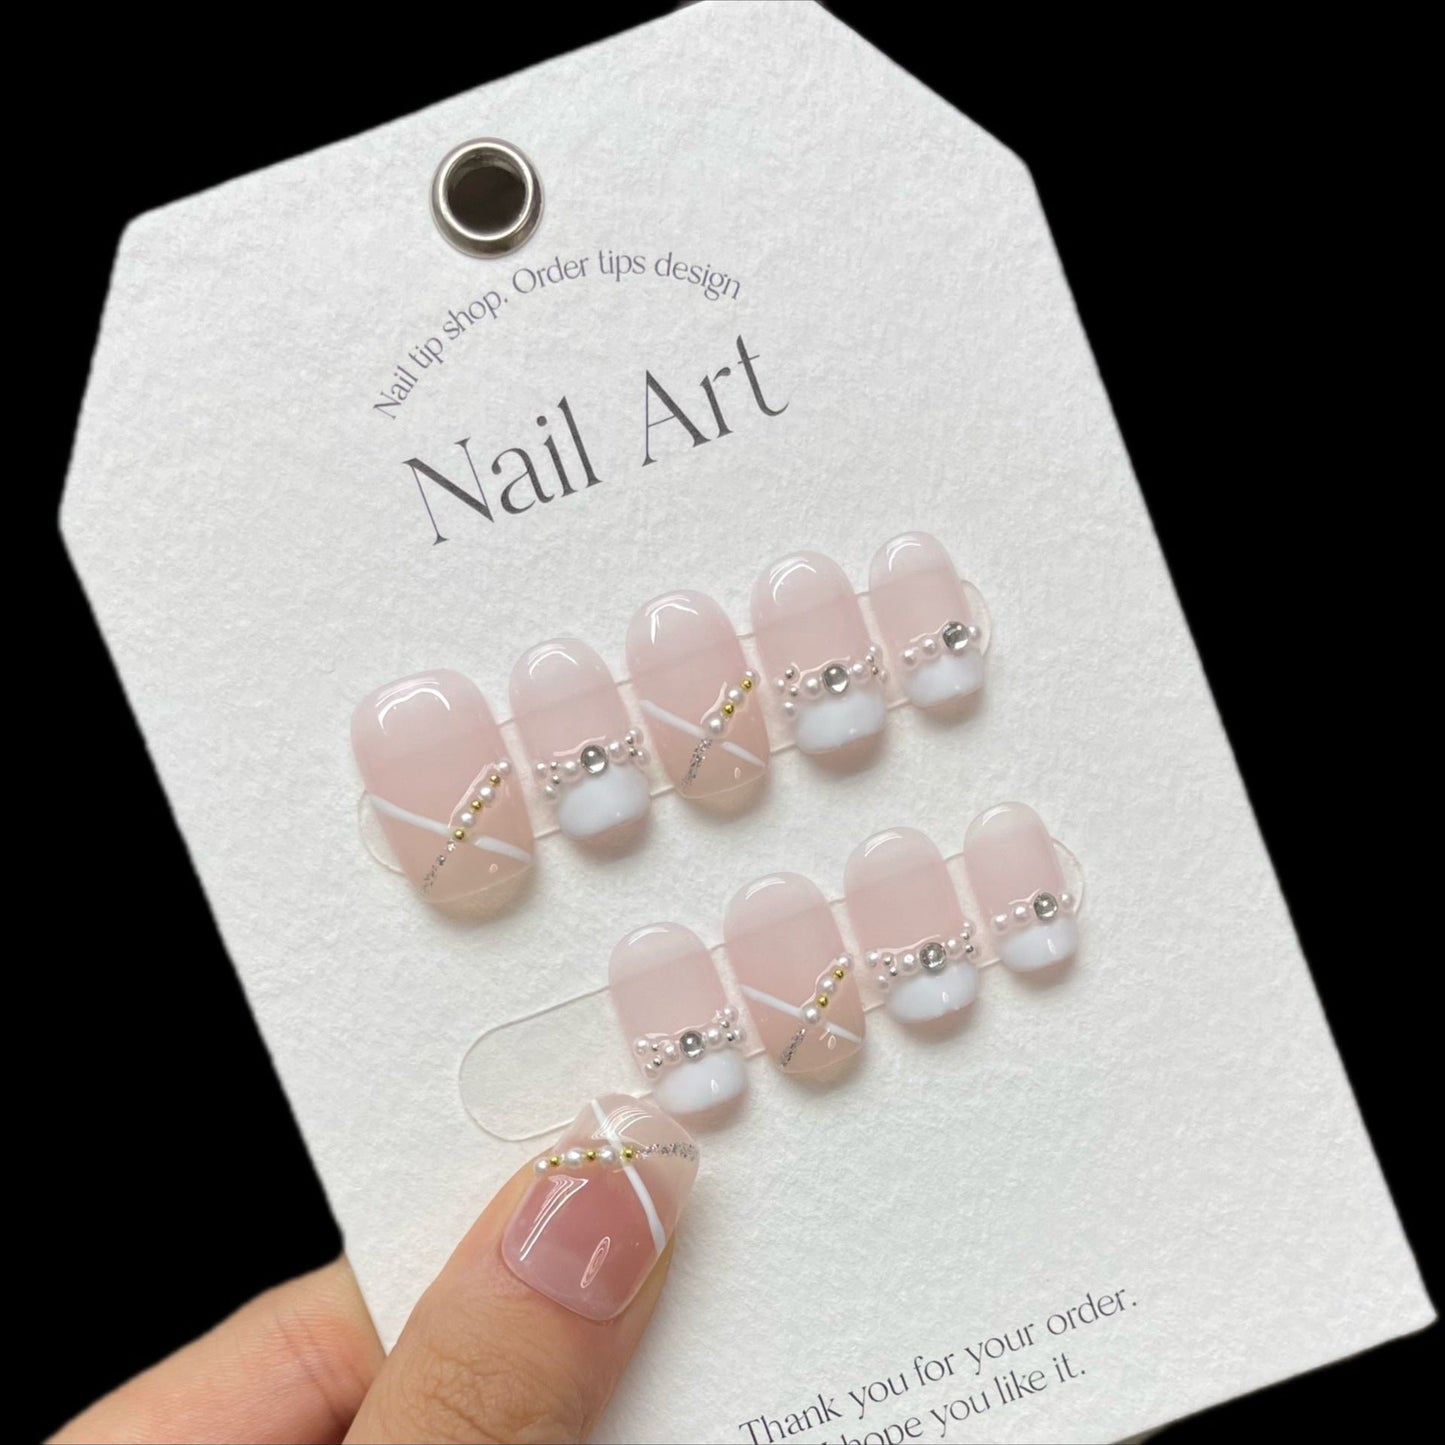 987 Zachte Franse stijl pers op nagels 100% handgemaakte kunstnagels wit roze nude kleur